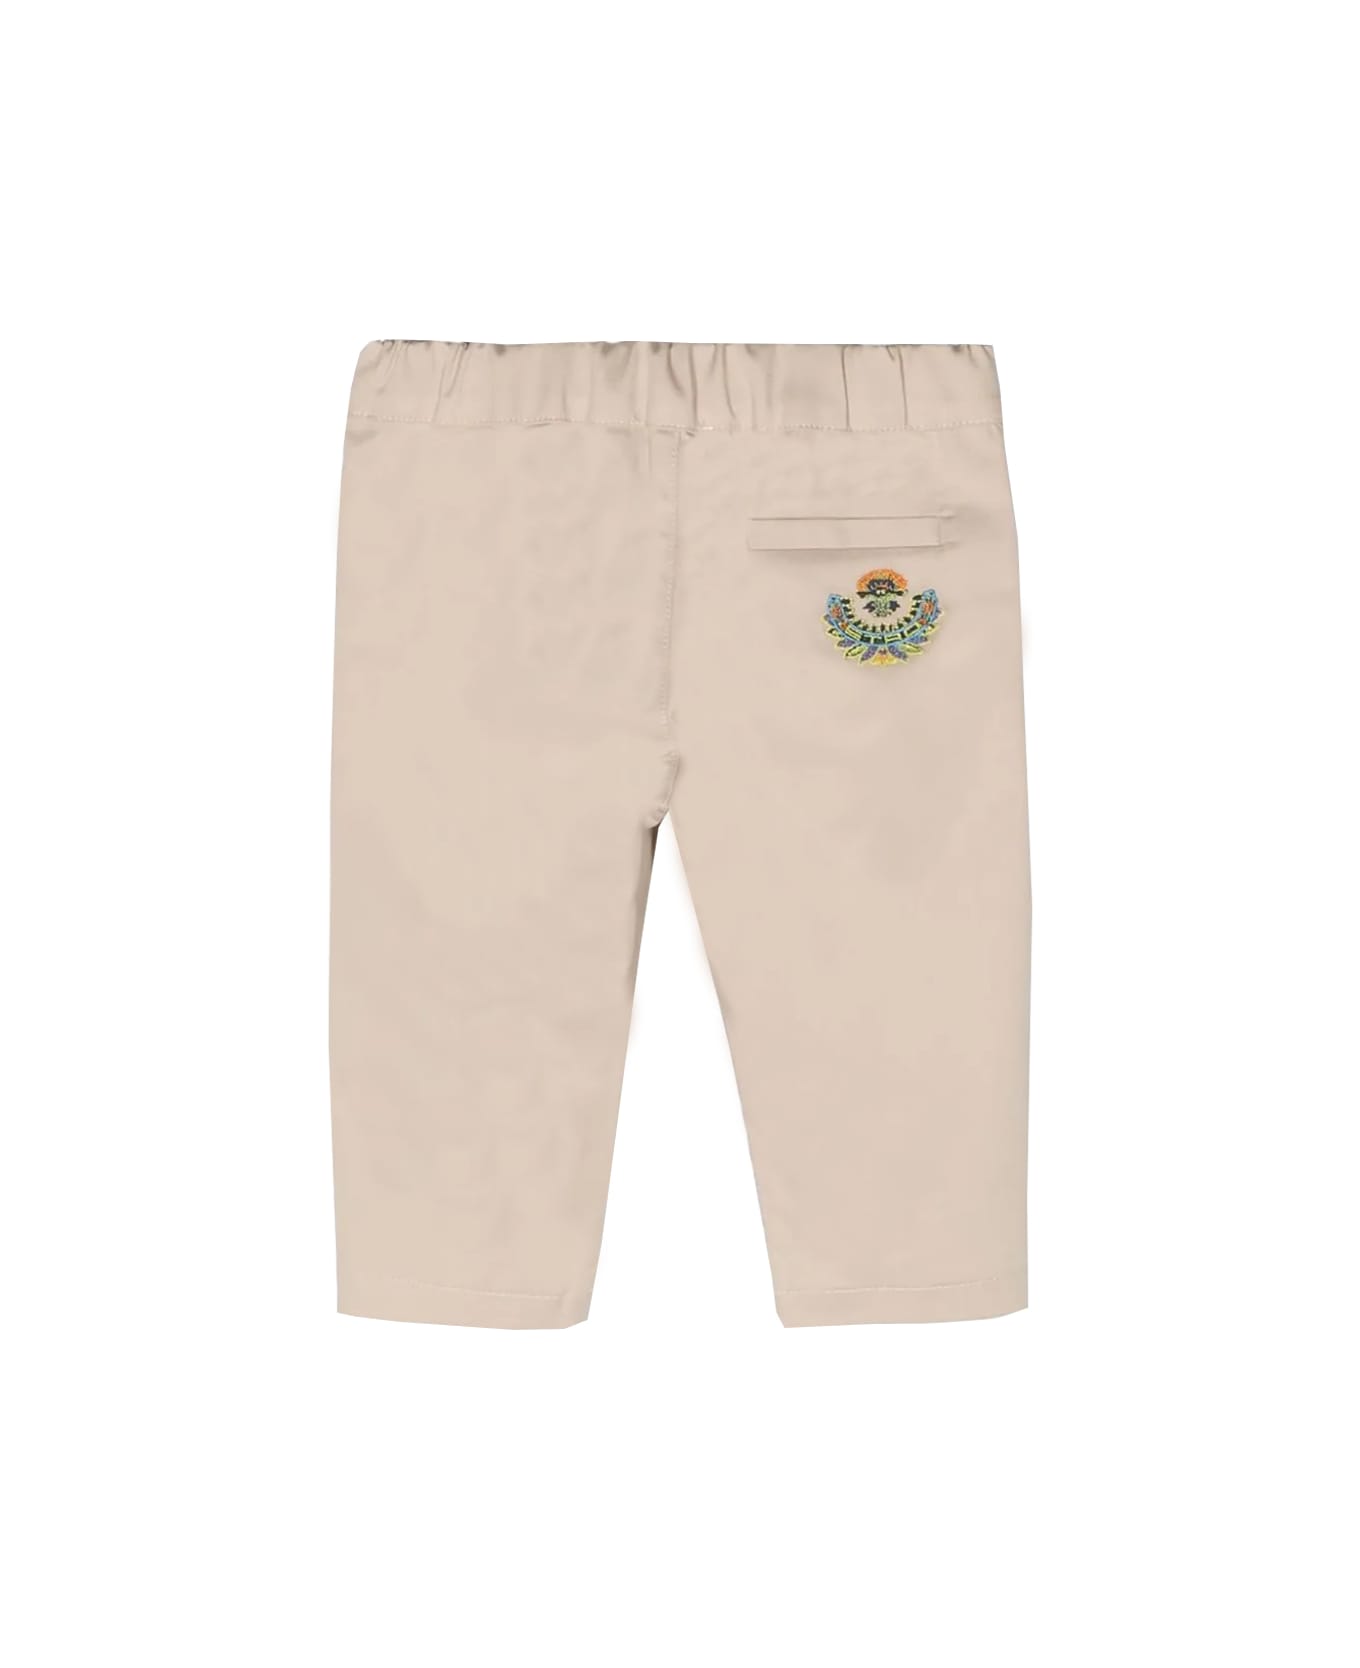 Etro Cotton Pants - Beige